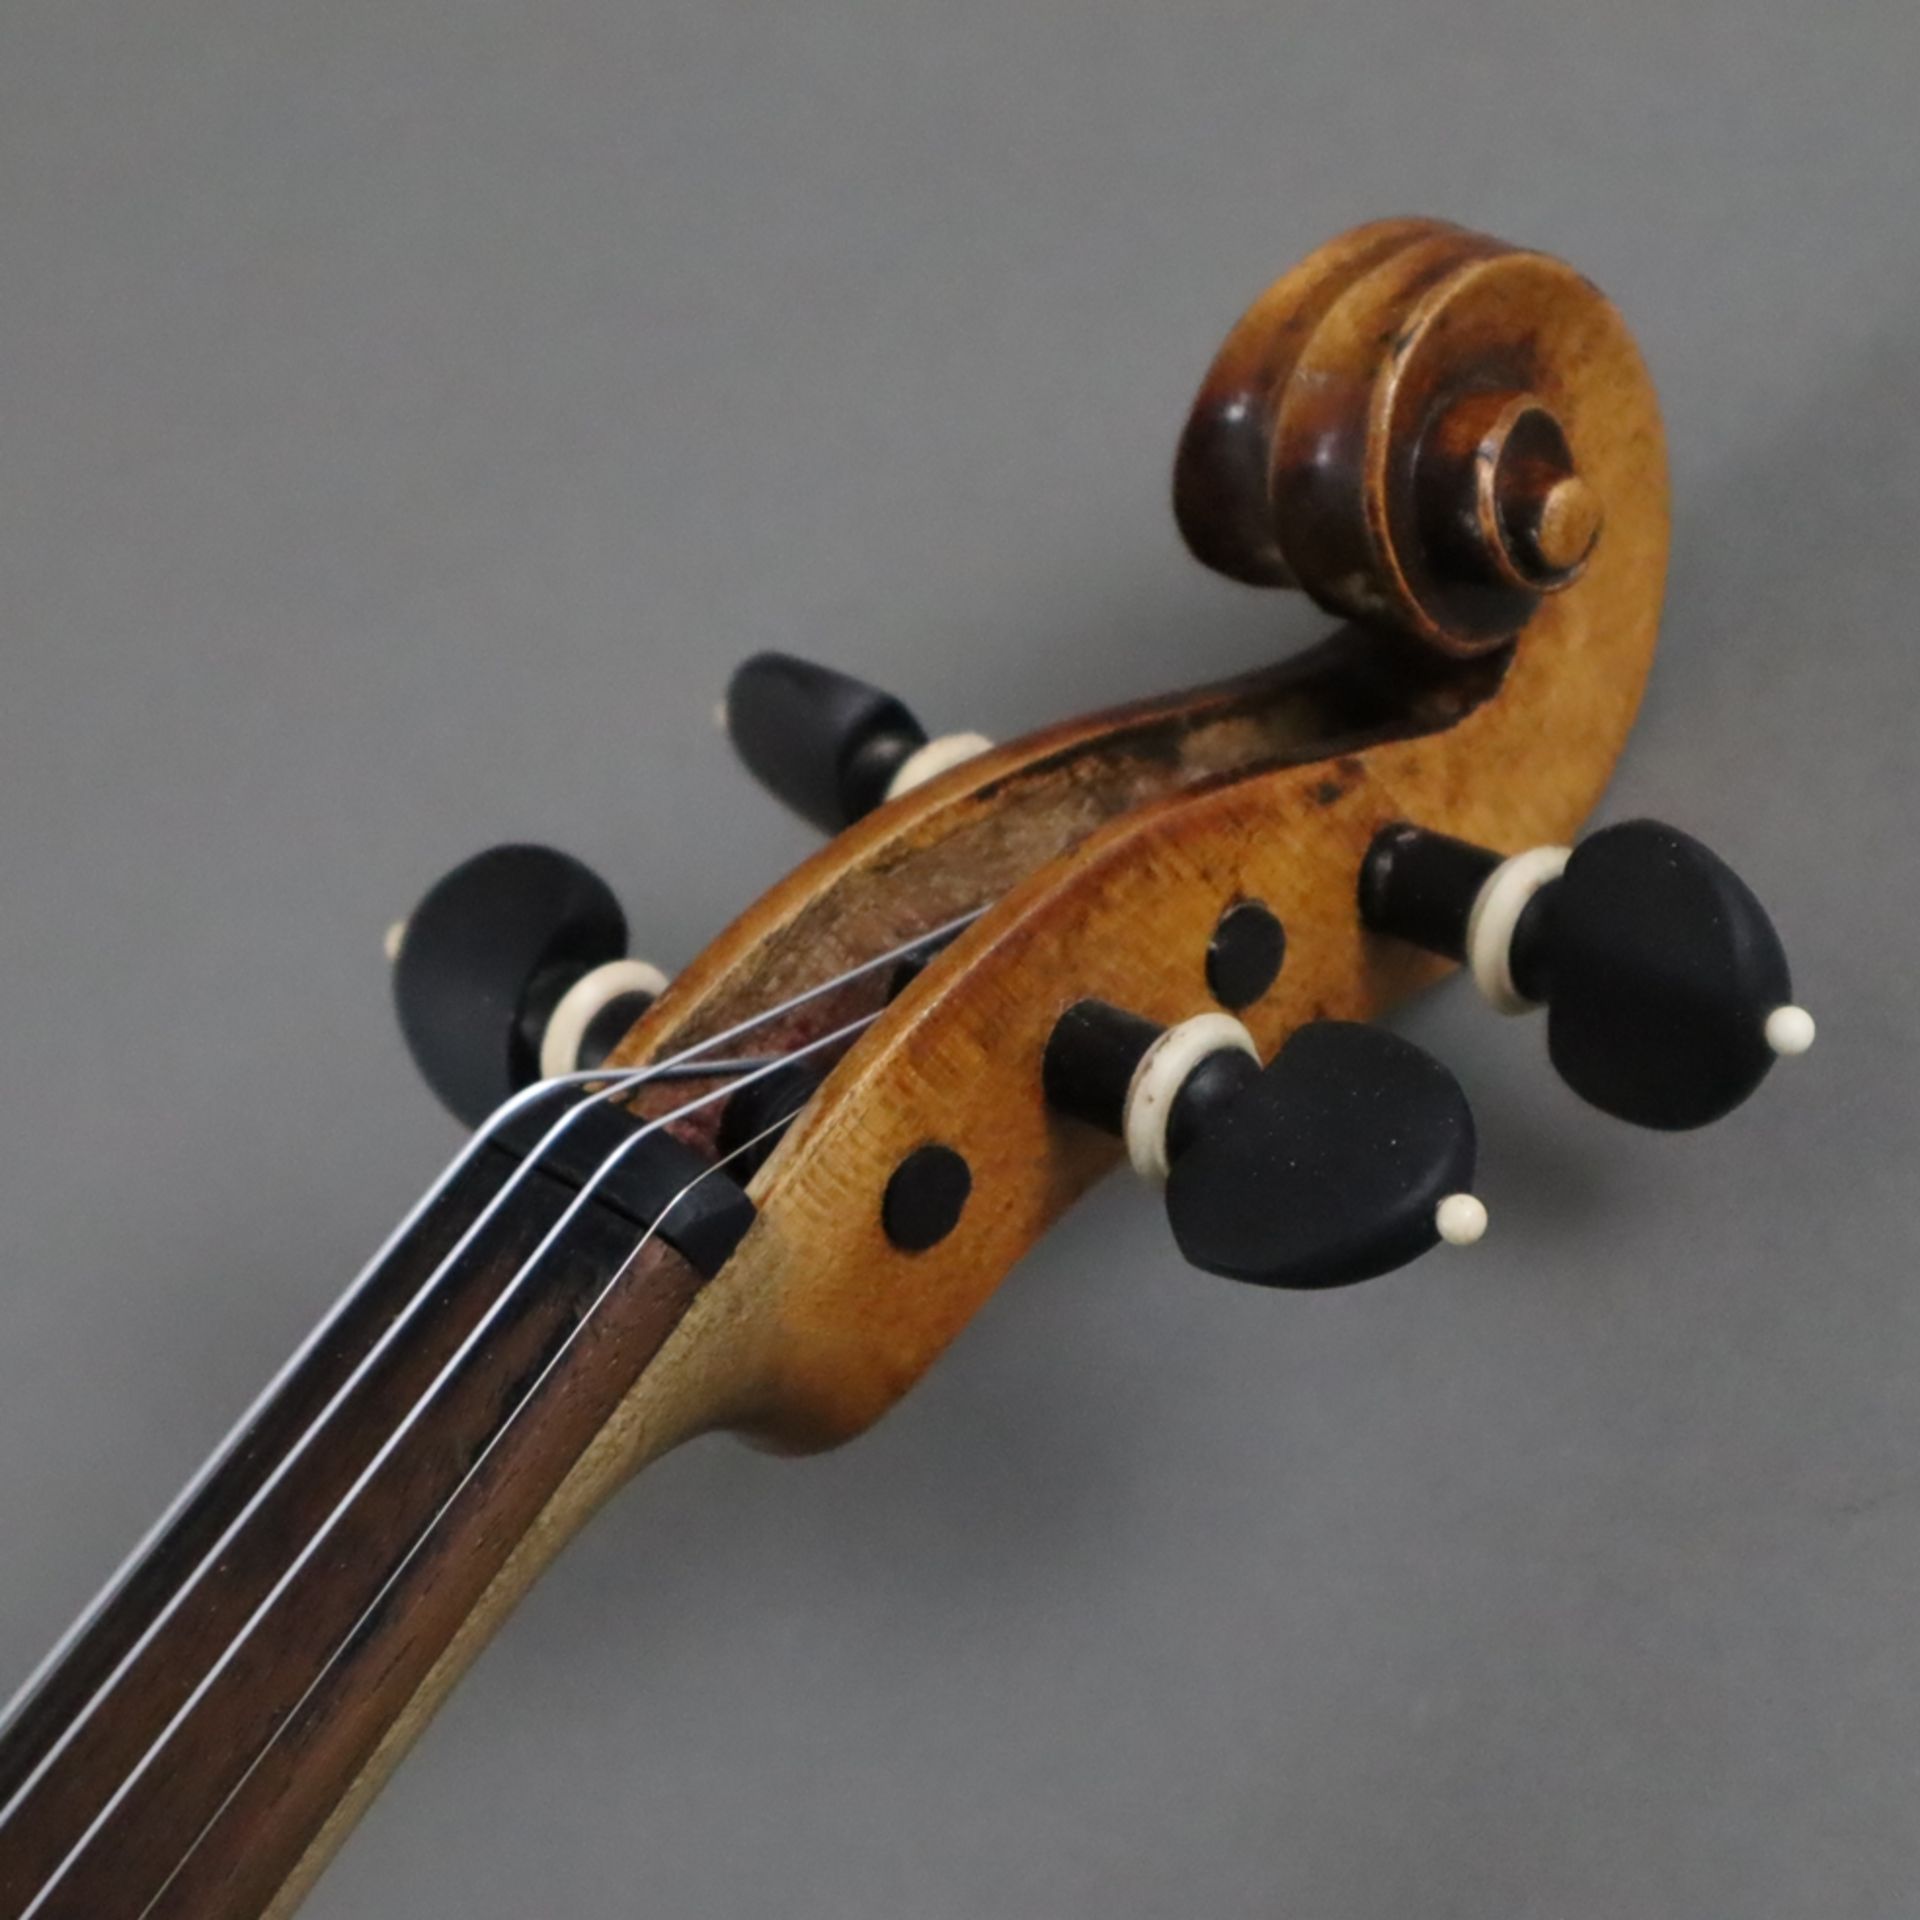 Schmale Geige - Italien, auf dem Faksimile-Etikett bezeichnet "Paolo Leonori / Roma 1949", einteili - Bild 2 aus 8